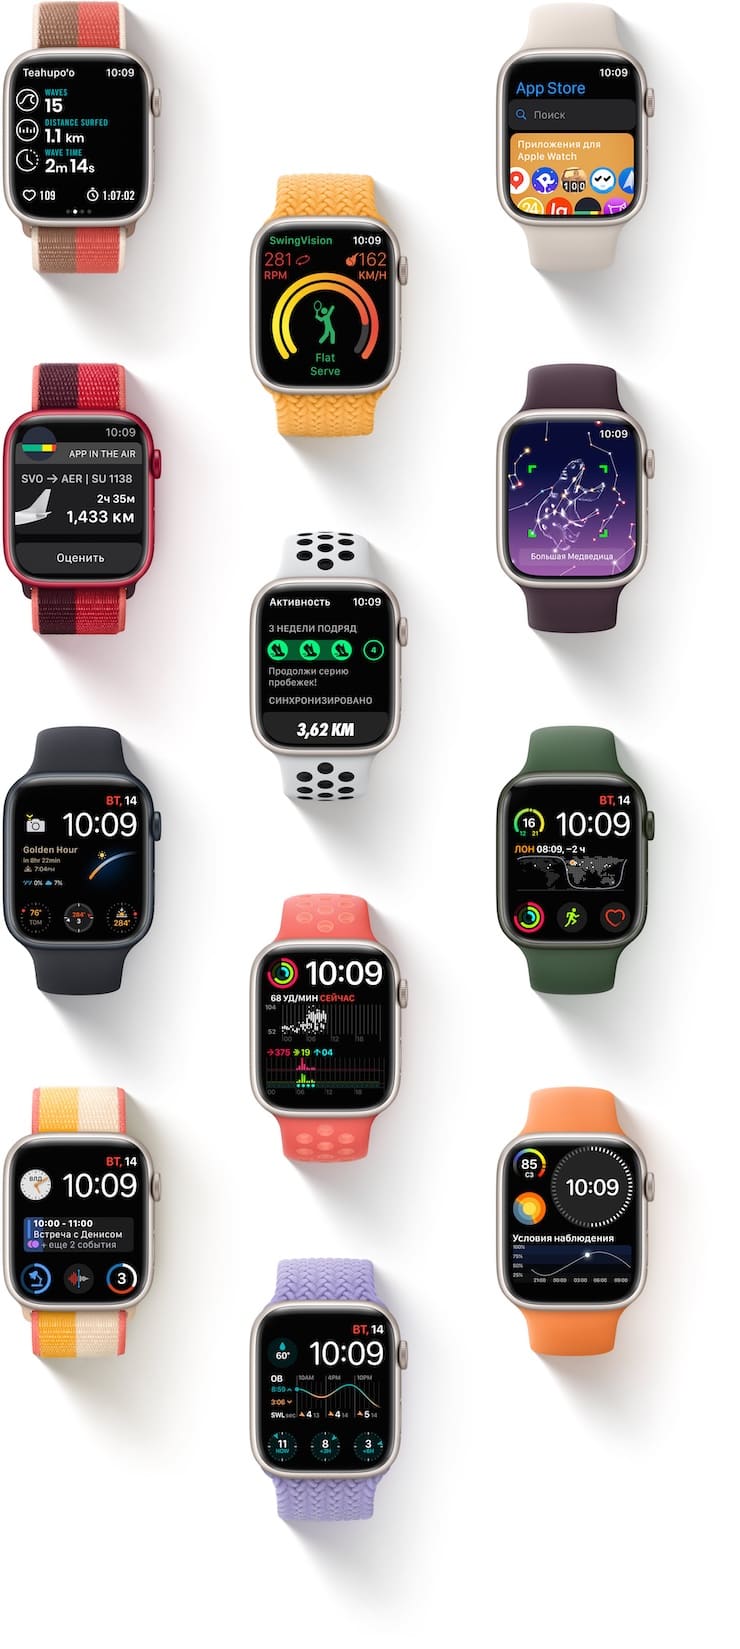 Циферблаты Apple Watch